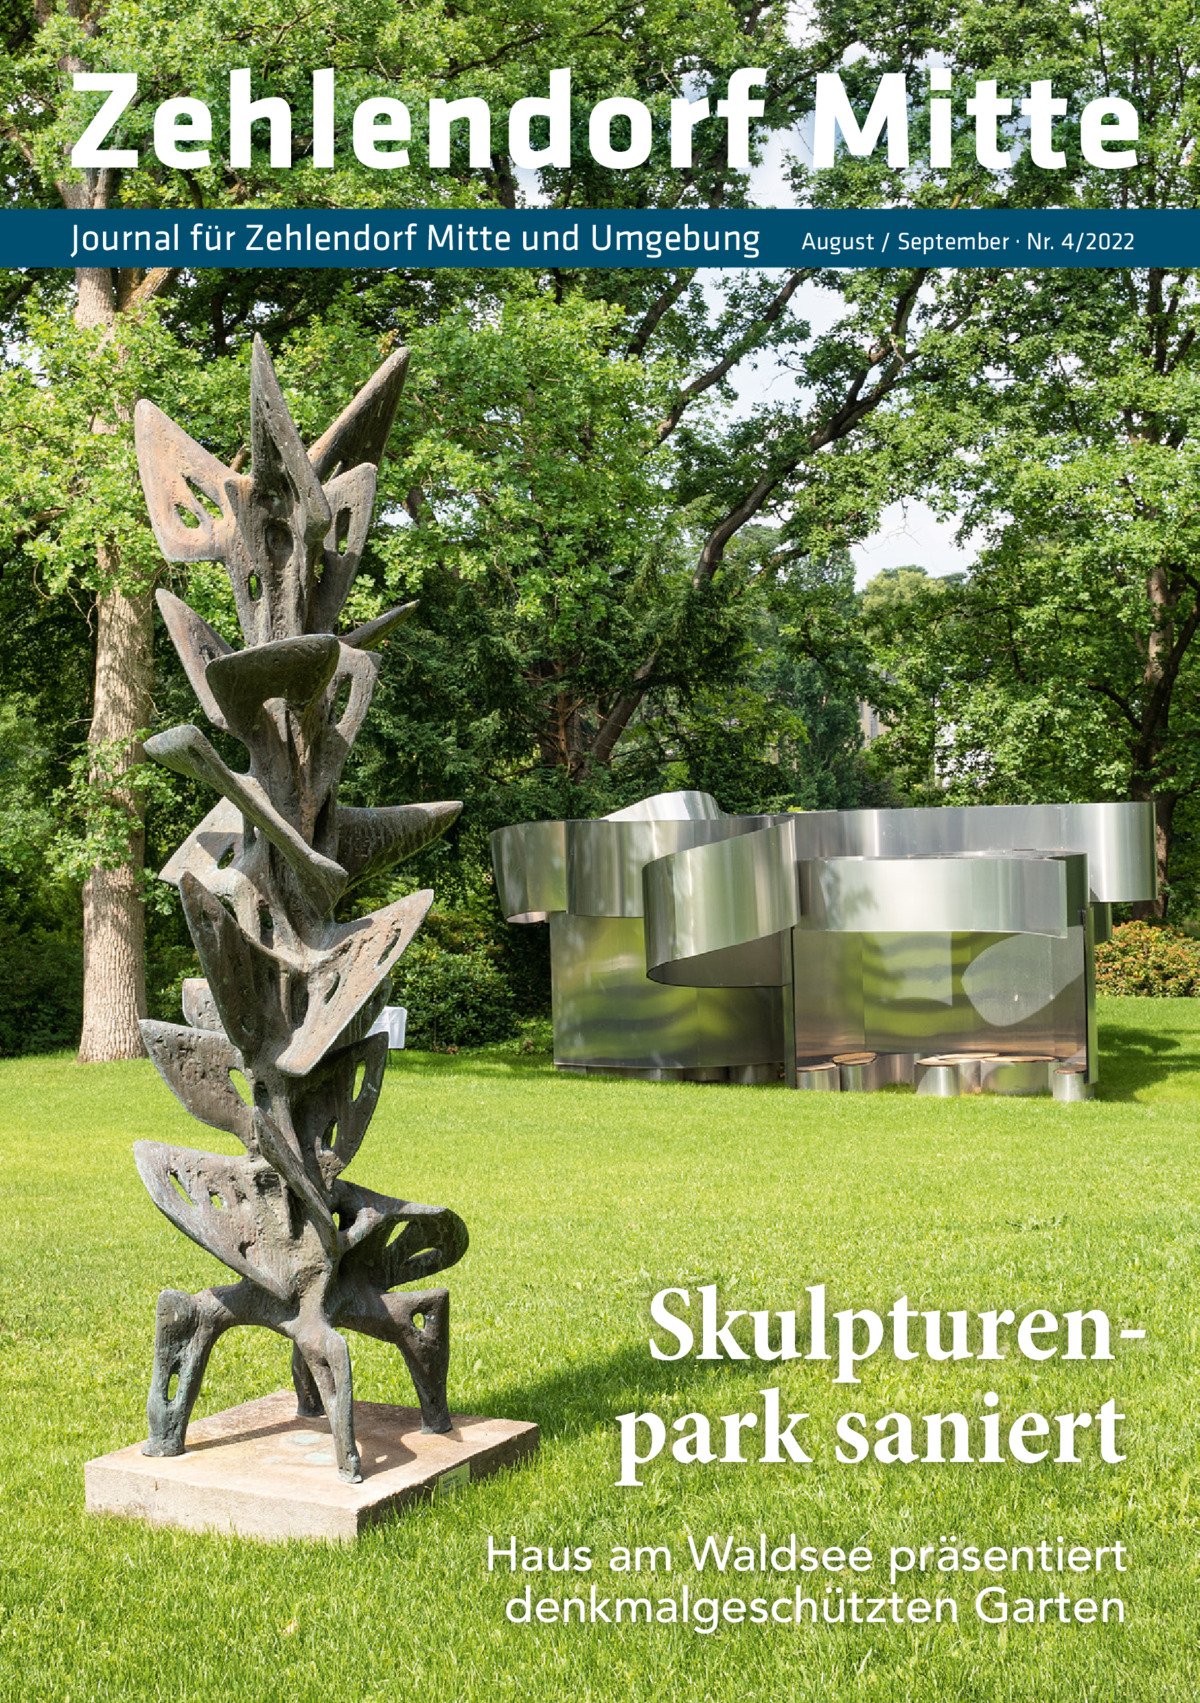 Zehlendorf Mitte Journal für Zehlendorf Mitte und Umgebung  August / September · Nr. 4/2022  Skulpturenpark saniert Haus am Waldsee präsentiert denkmalgeschützten Garten